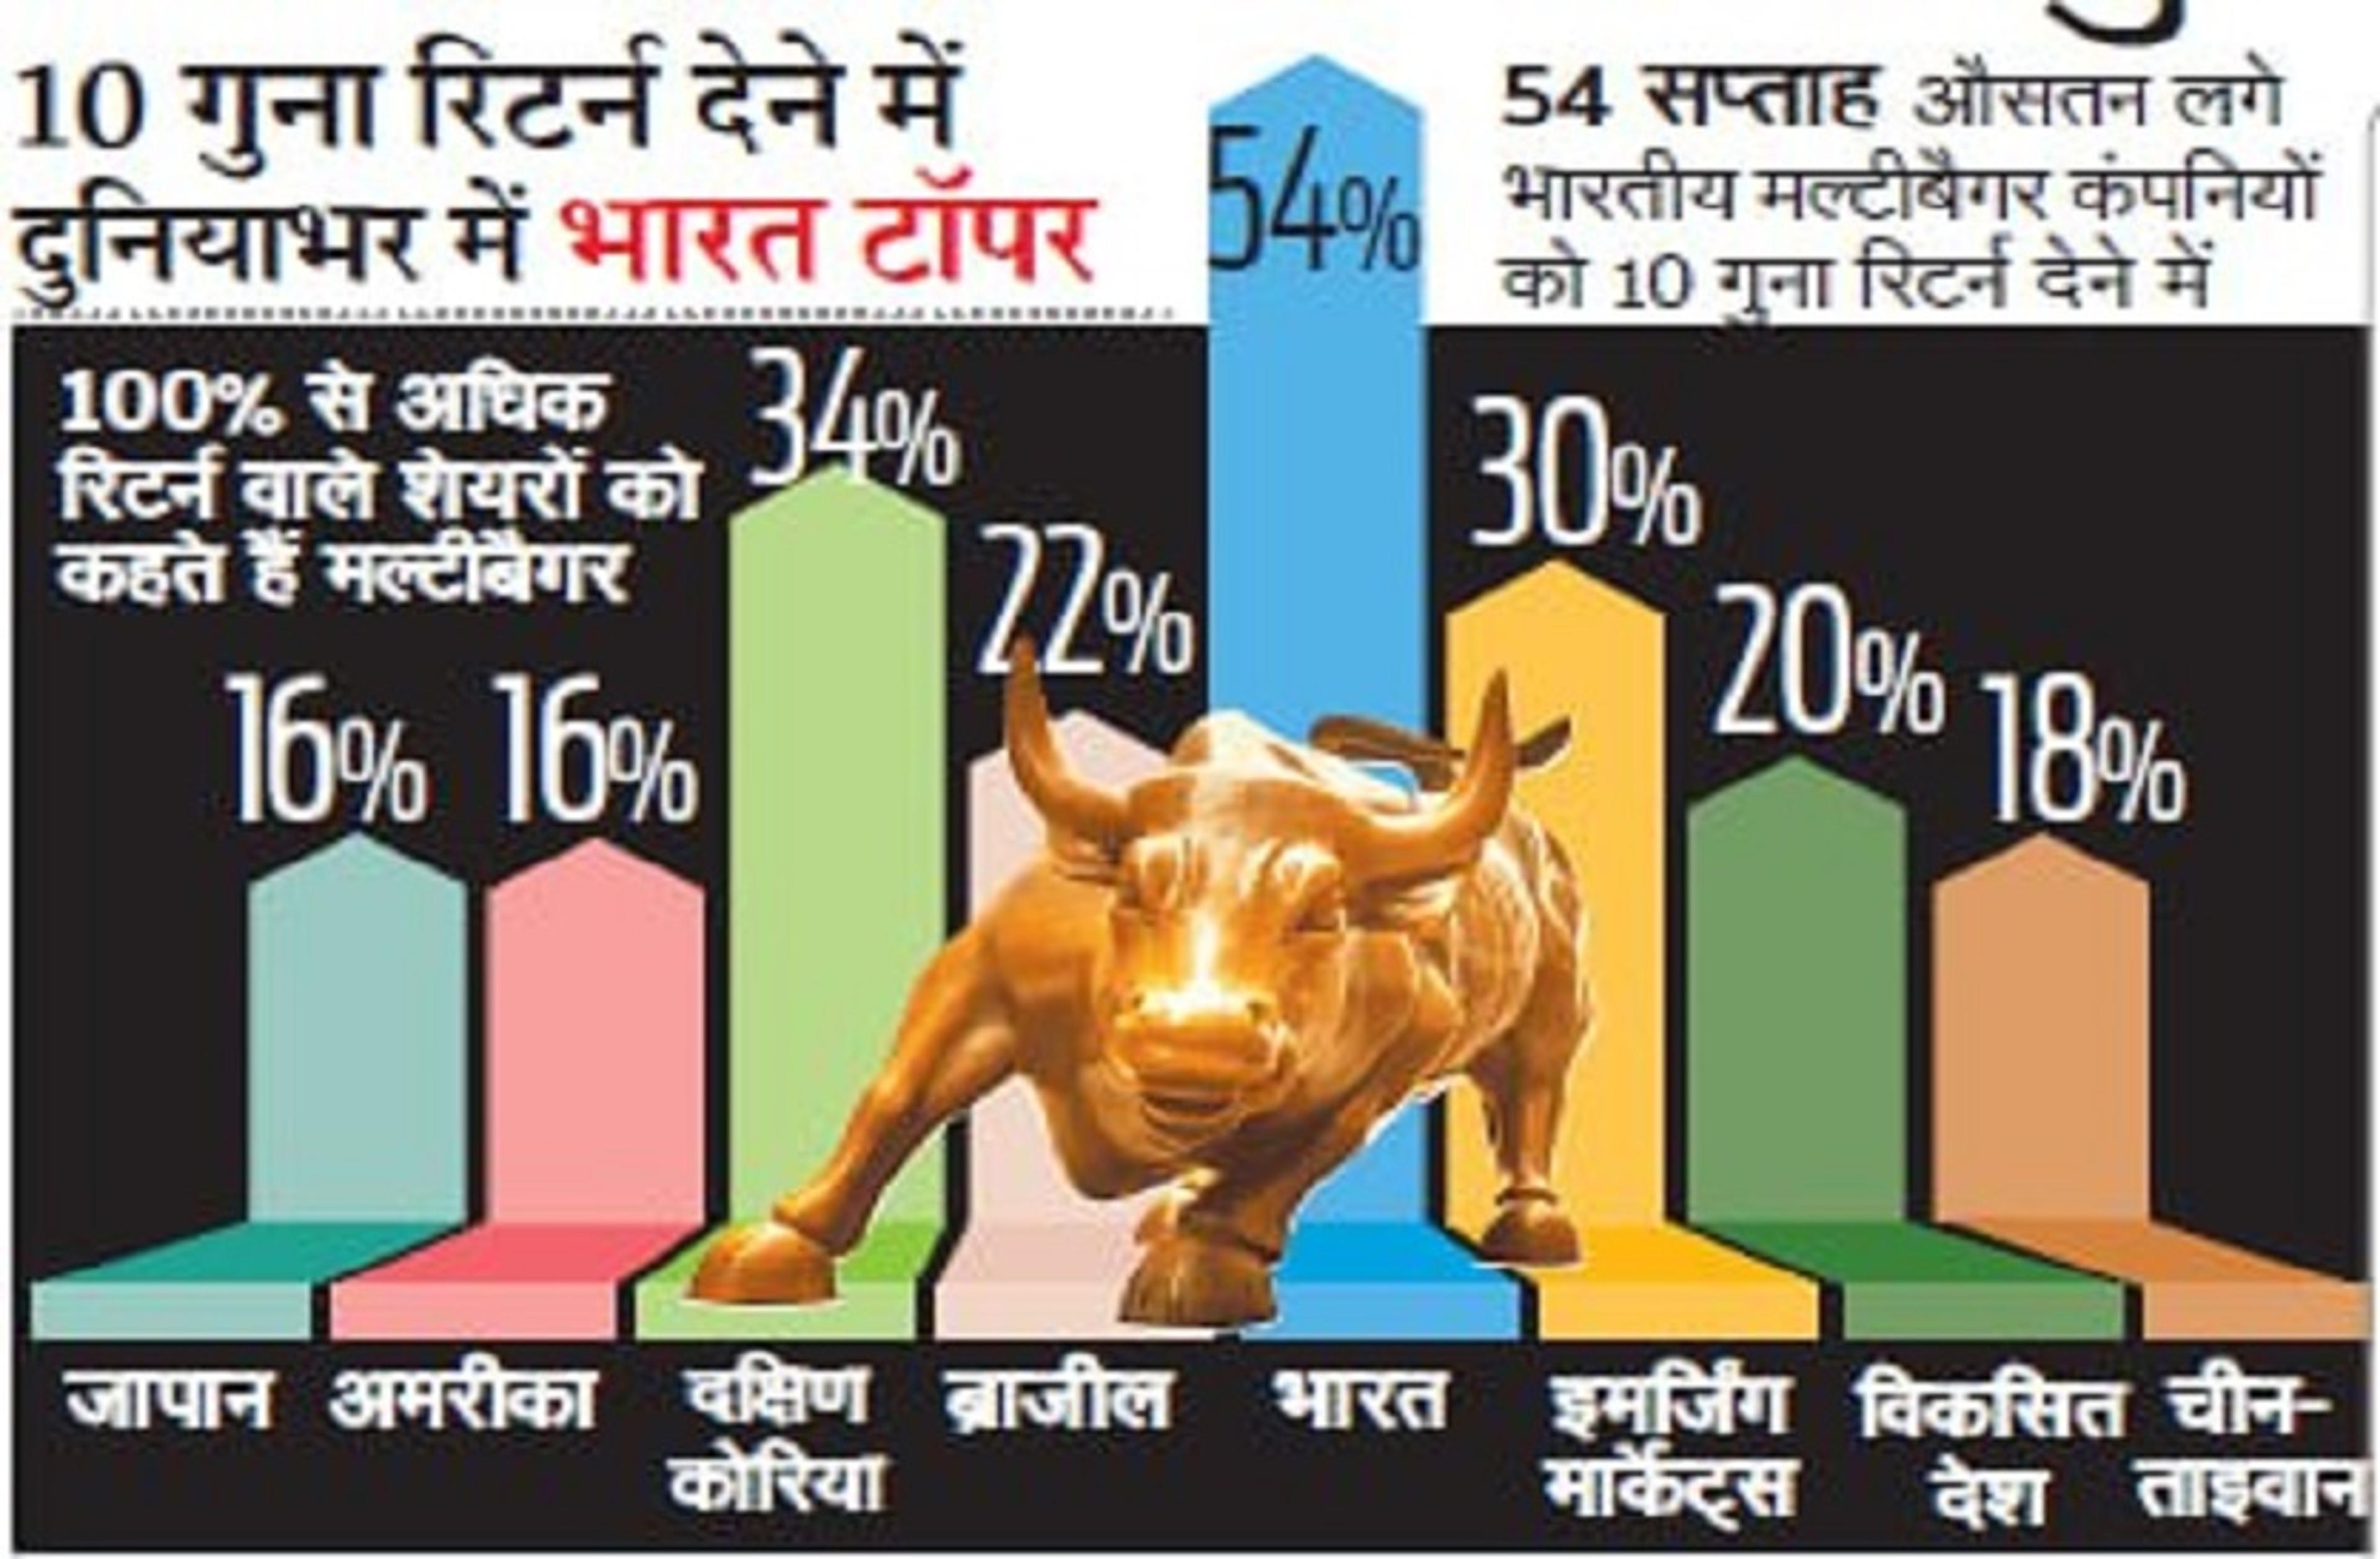 मल्टीबैगर स्टॉक्स देने में भारत सबसे आगे, 3 साल में ये शेयर्स देंगे 100% से अधिक रिटर्न